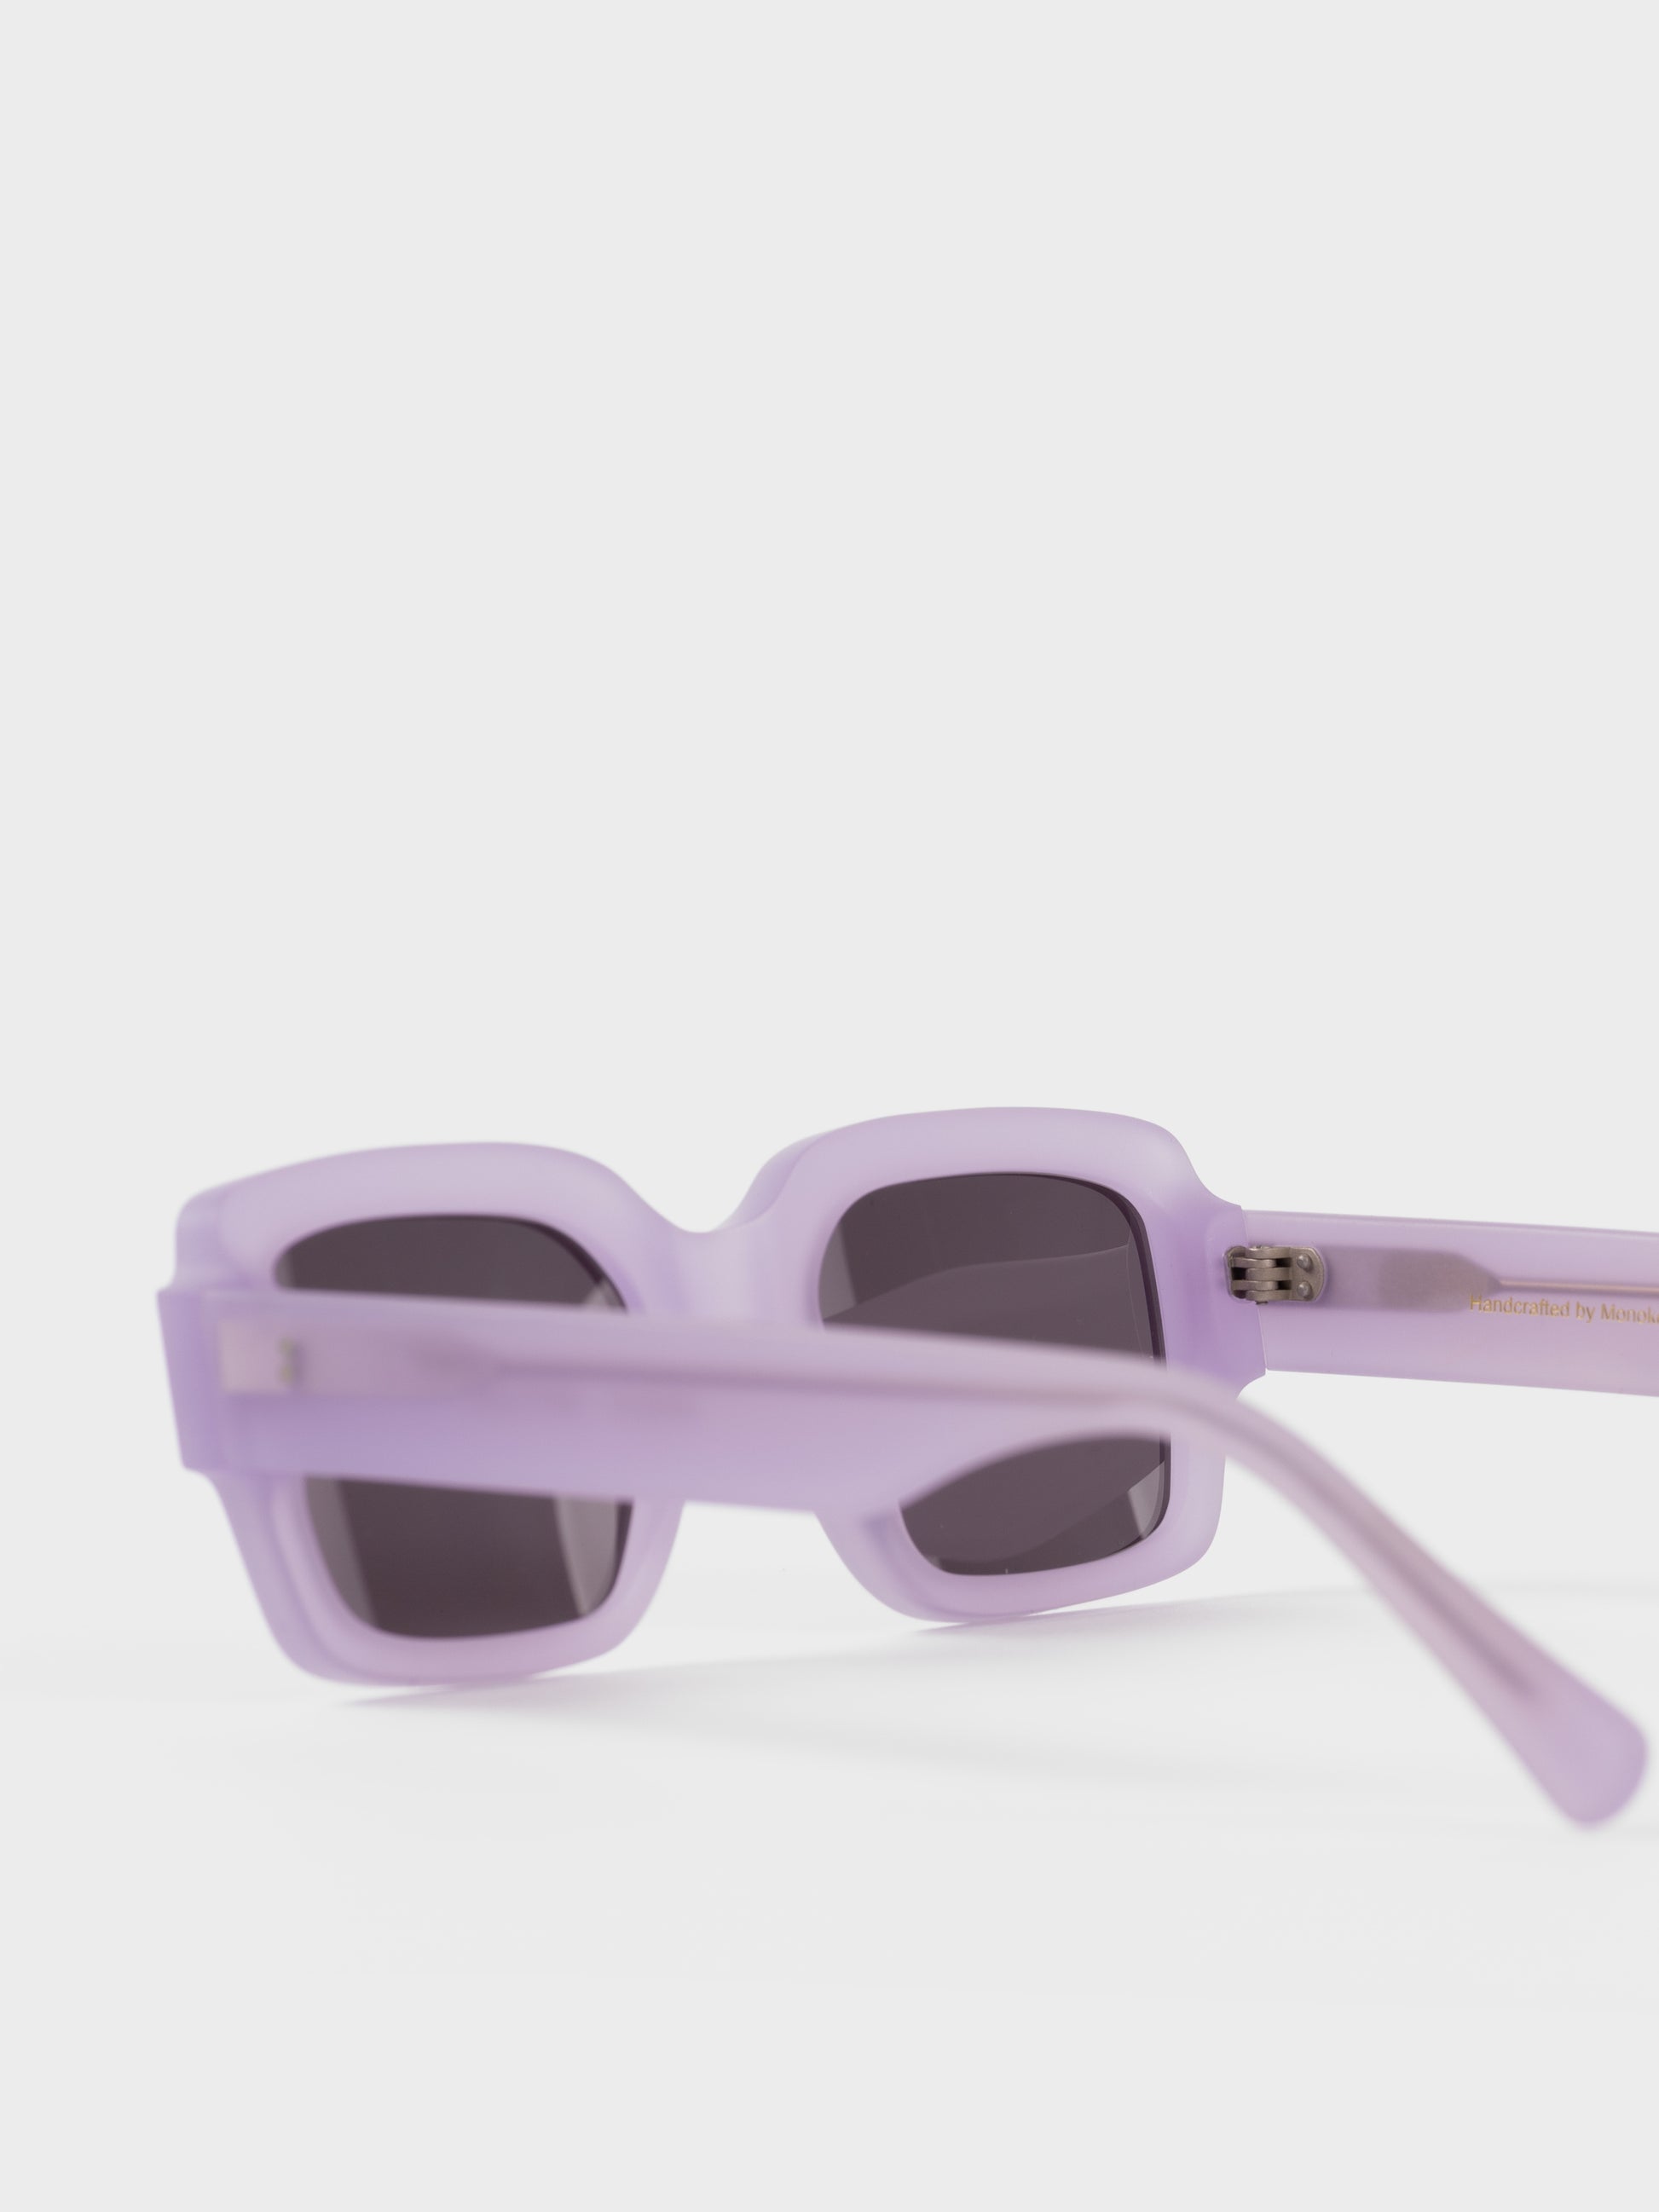 Monokel Sunglasses - Apollo Matt Lilac/Grey Lens